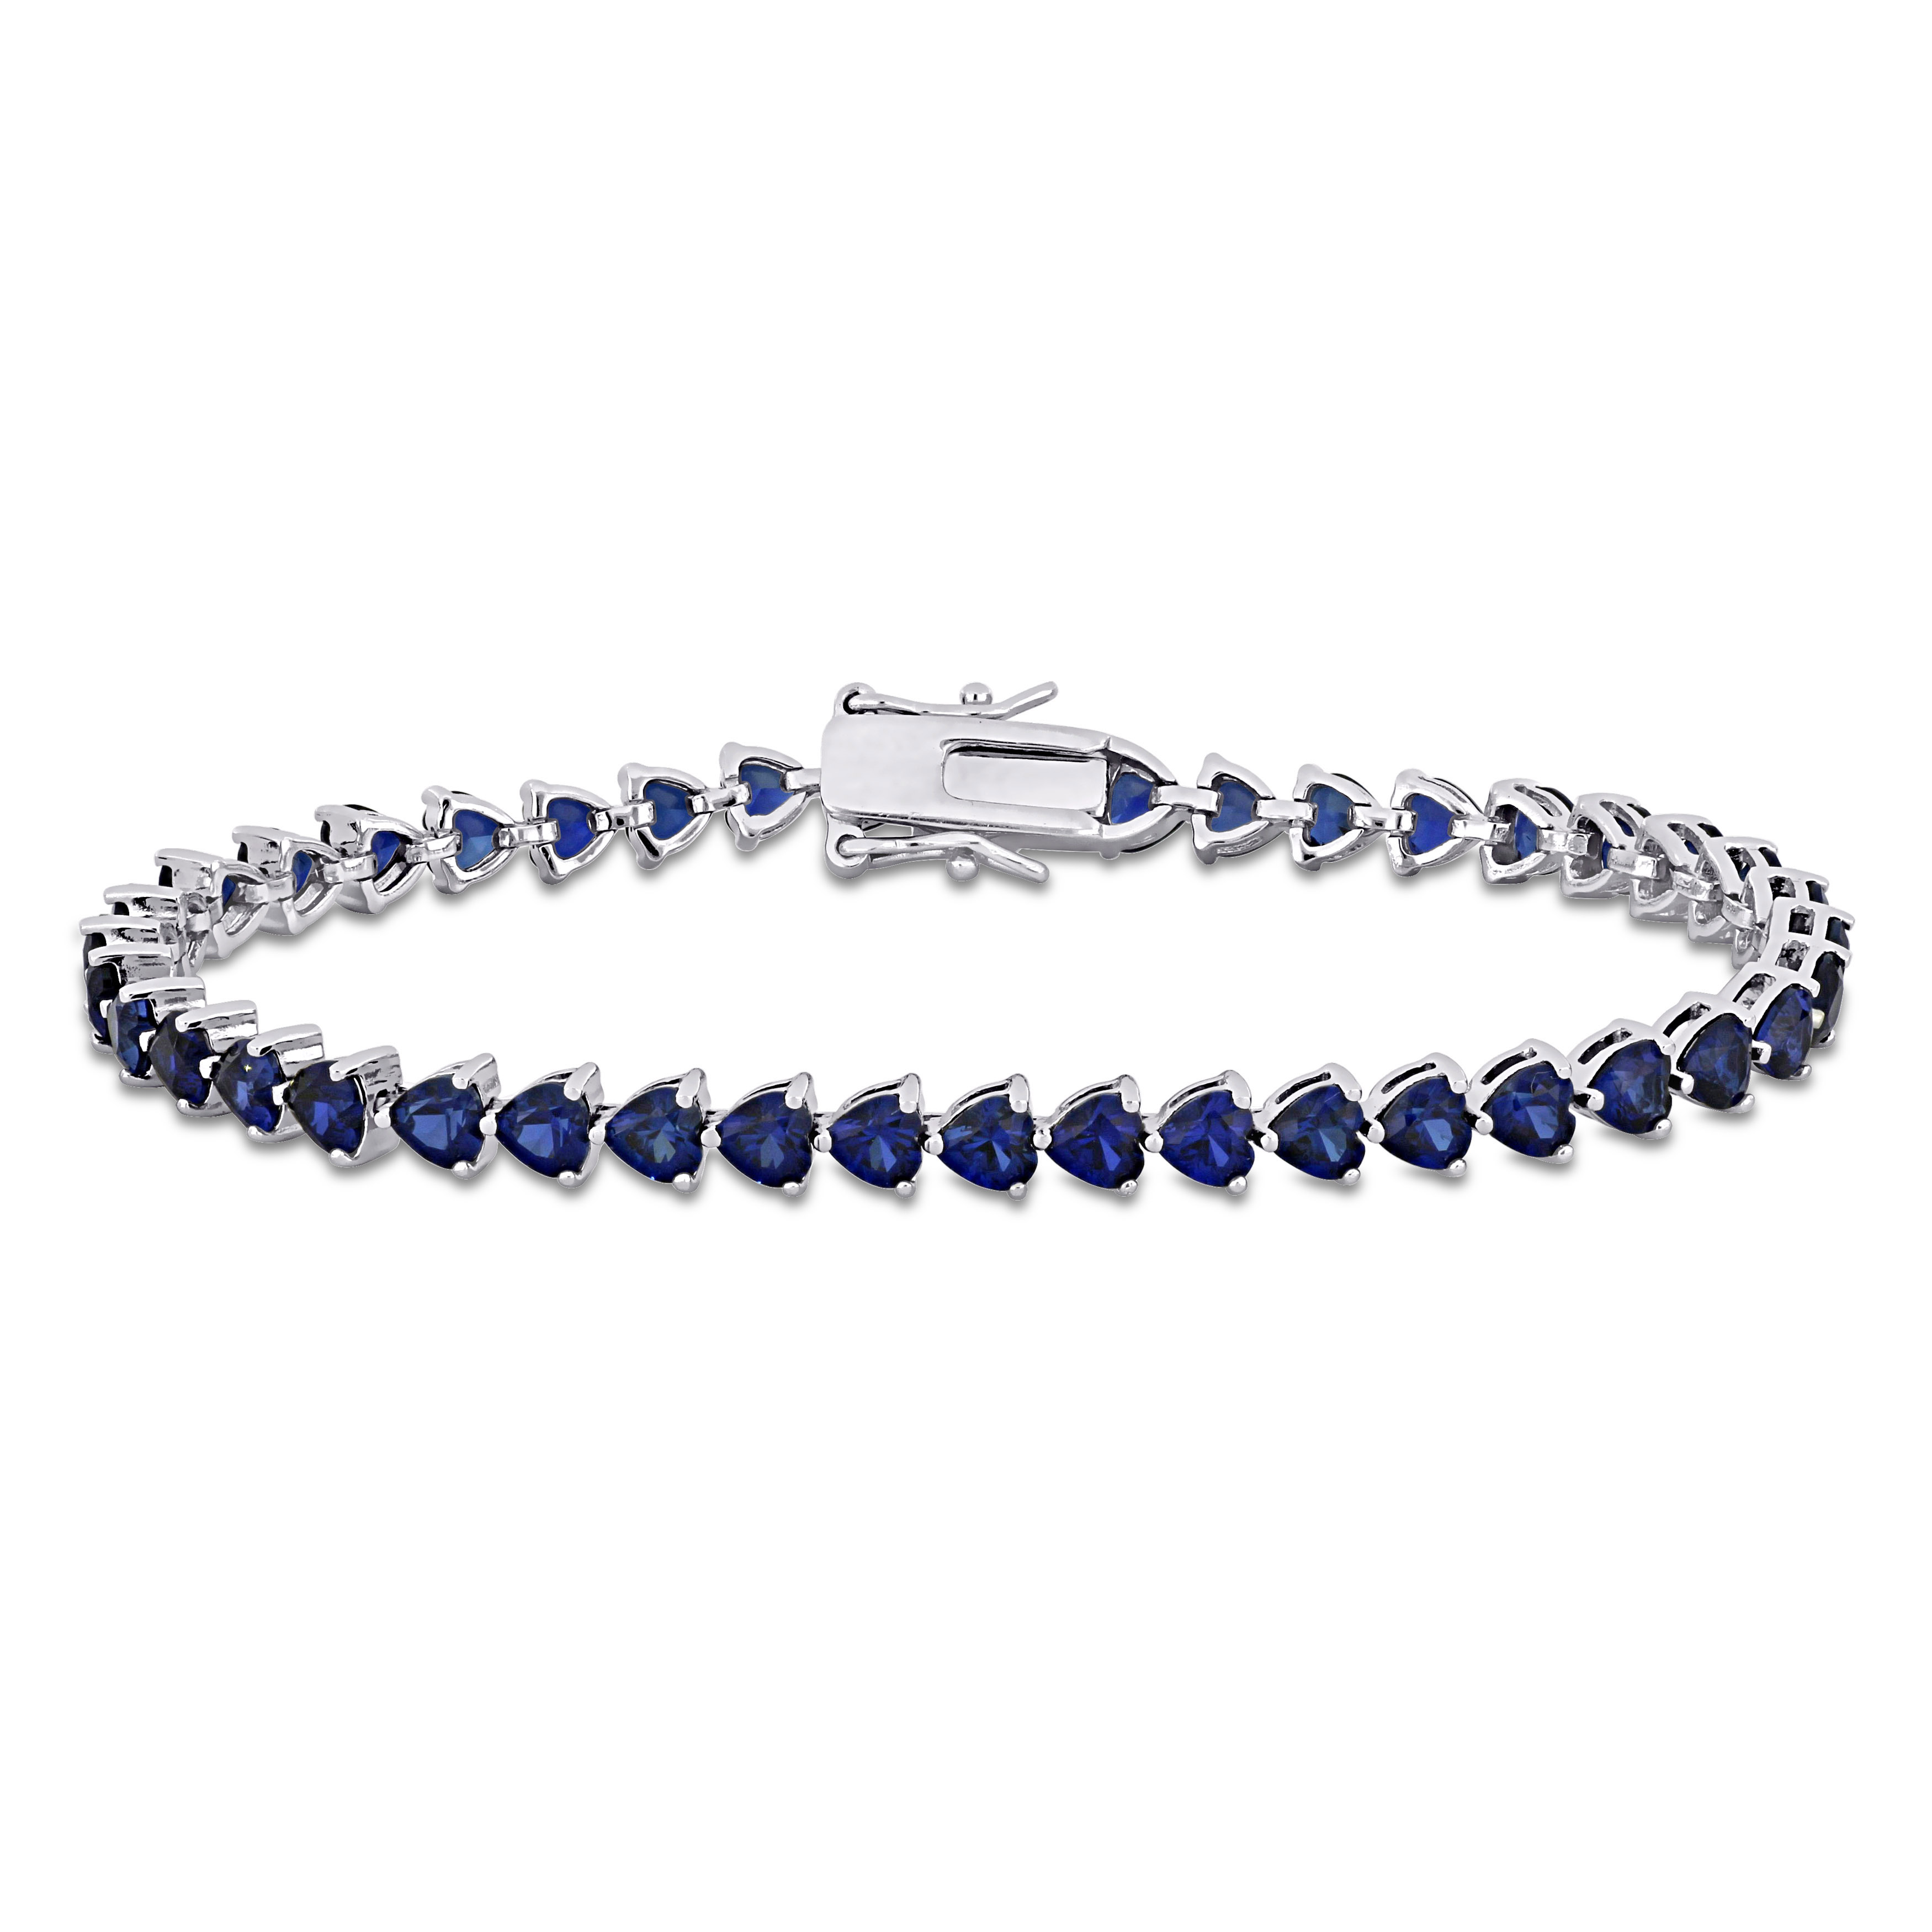 11.40 CT TGW Heart Shape Created Blue Sapphire Tennis Bracelet in Sterling Silver - 7.5 in.